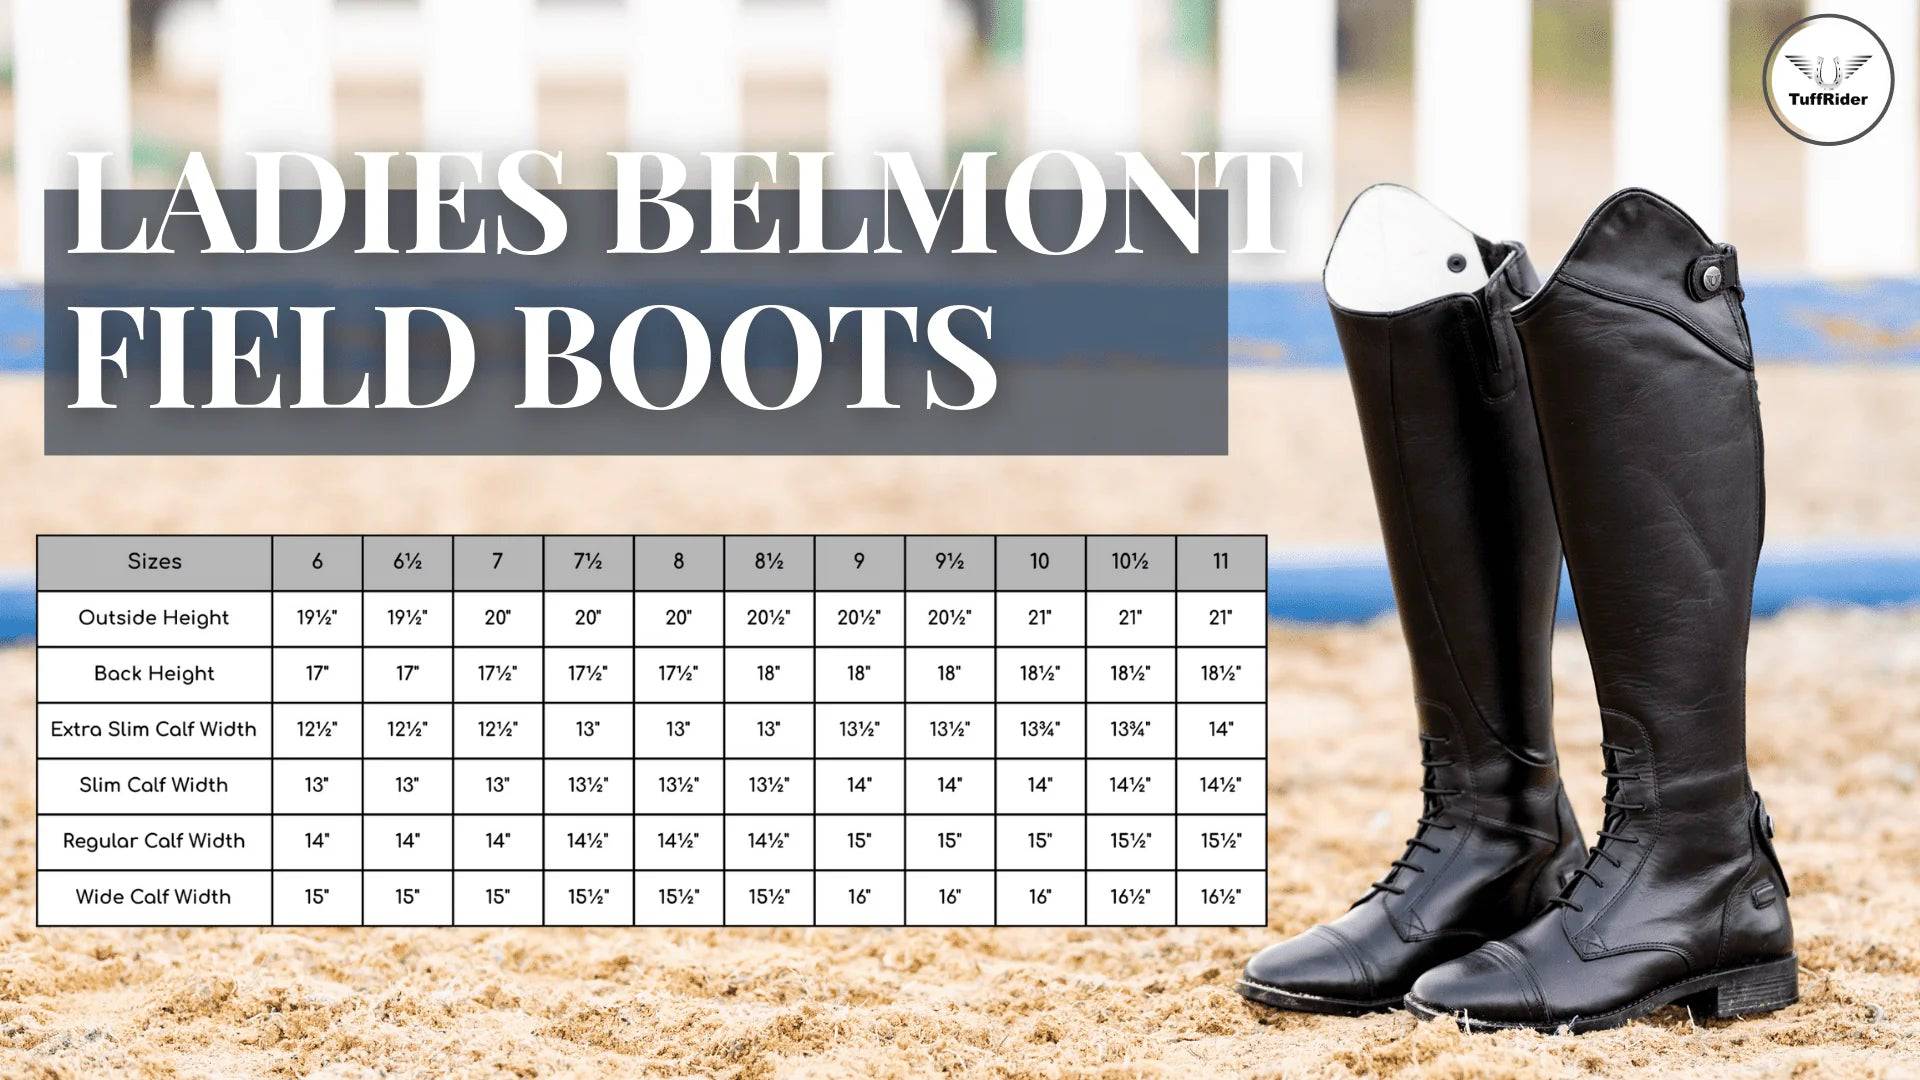 TuffRider Belmont Field Boots